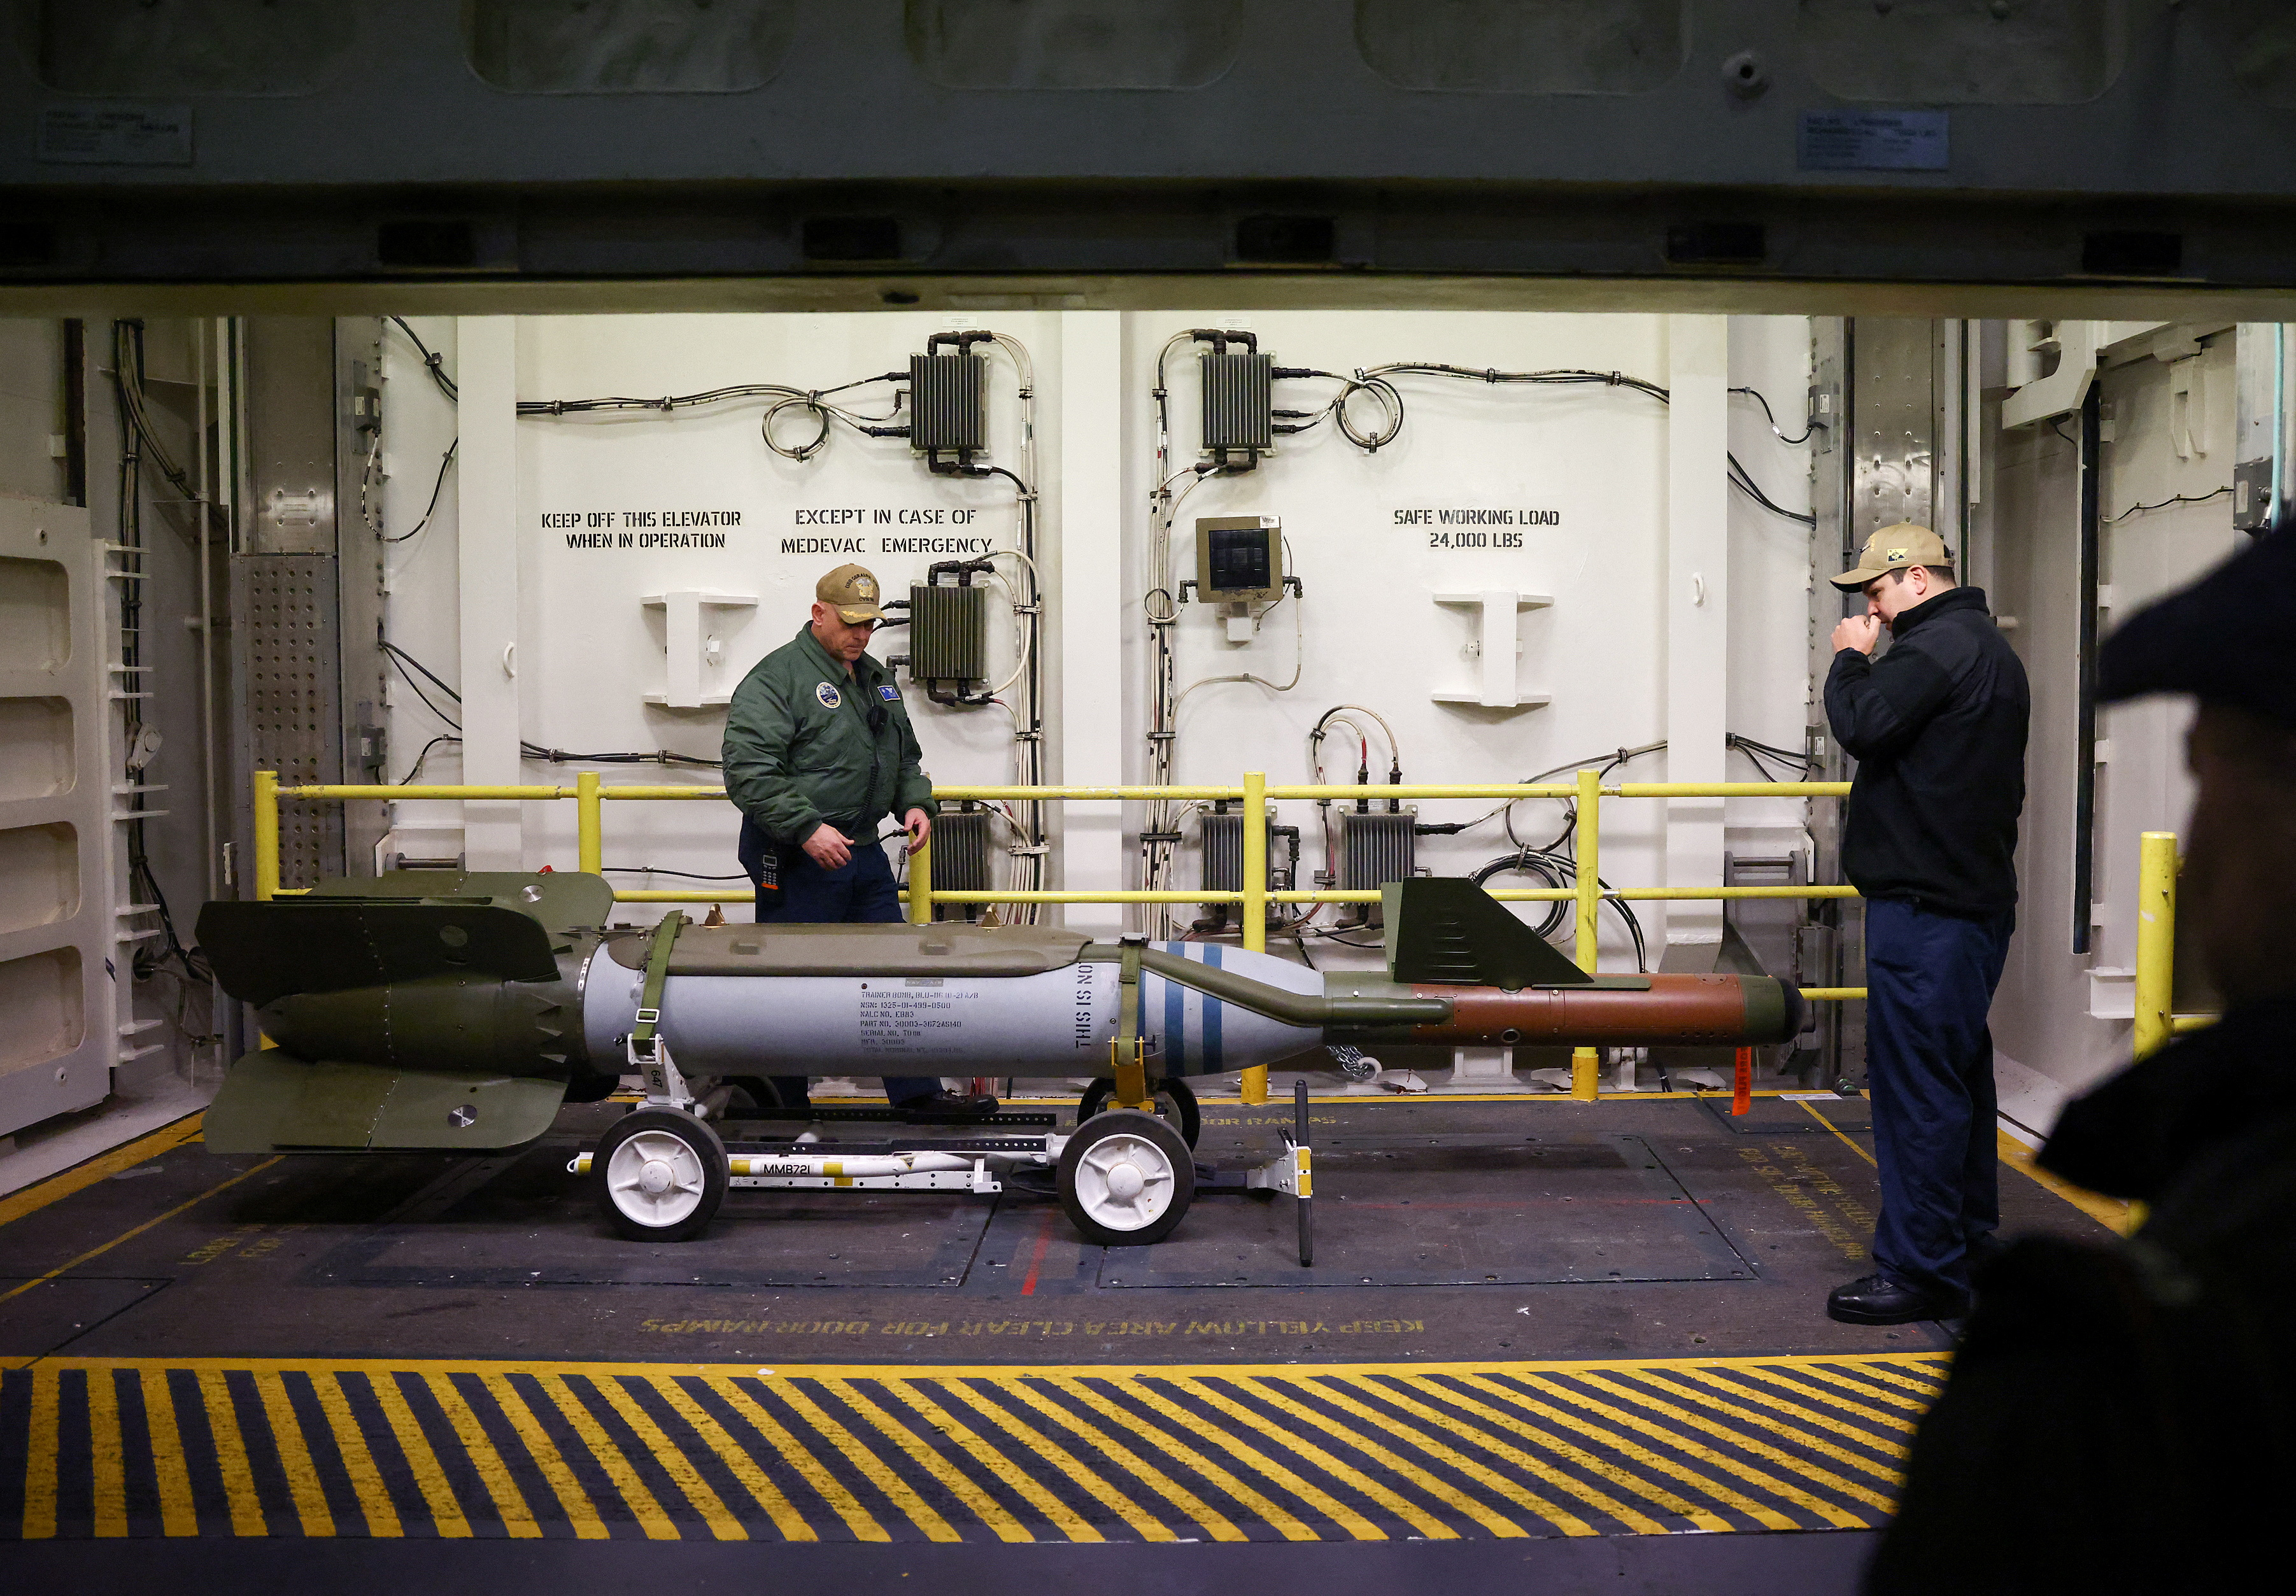 ARCHIVO: Miembros de la tripulación hacen una demostración del elevador de armas avanzado a bordo del portaaviones estadounidense USS Gerald R. Ford mientras está anclado en el Solent, cerca de Gosport, Gran Bretaña, el pasado 17 de noviembre de 2022 (Reuters)